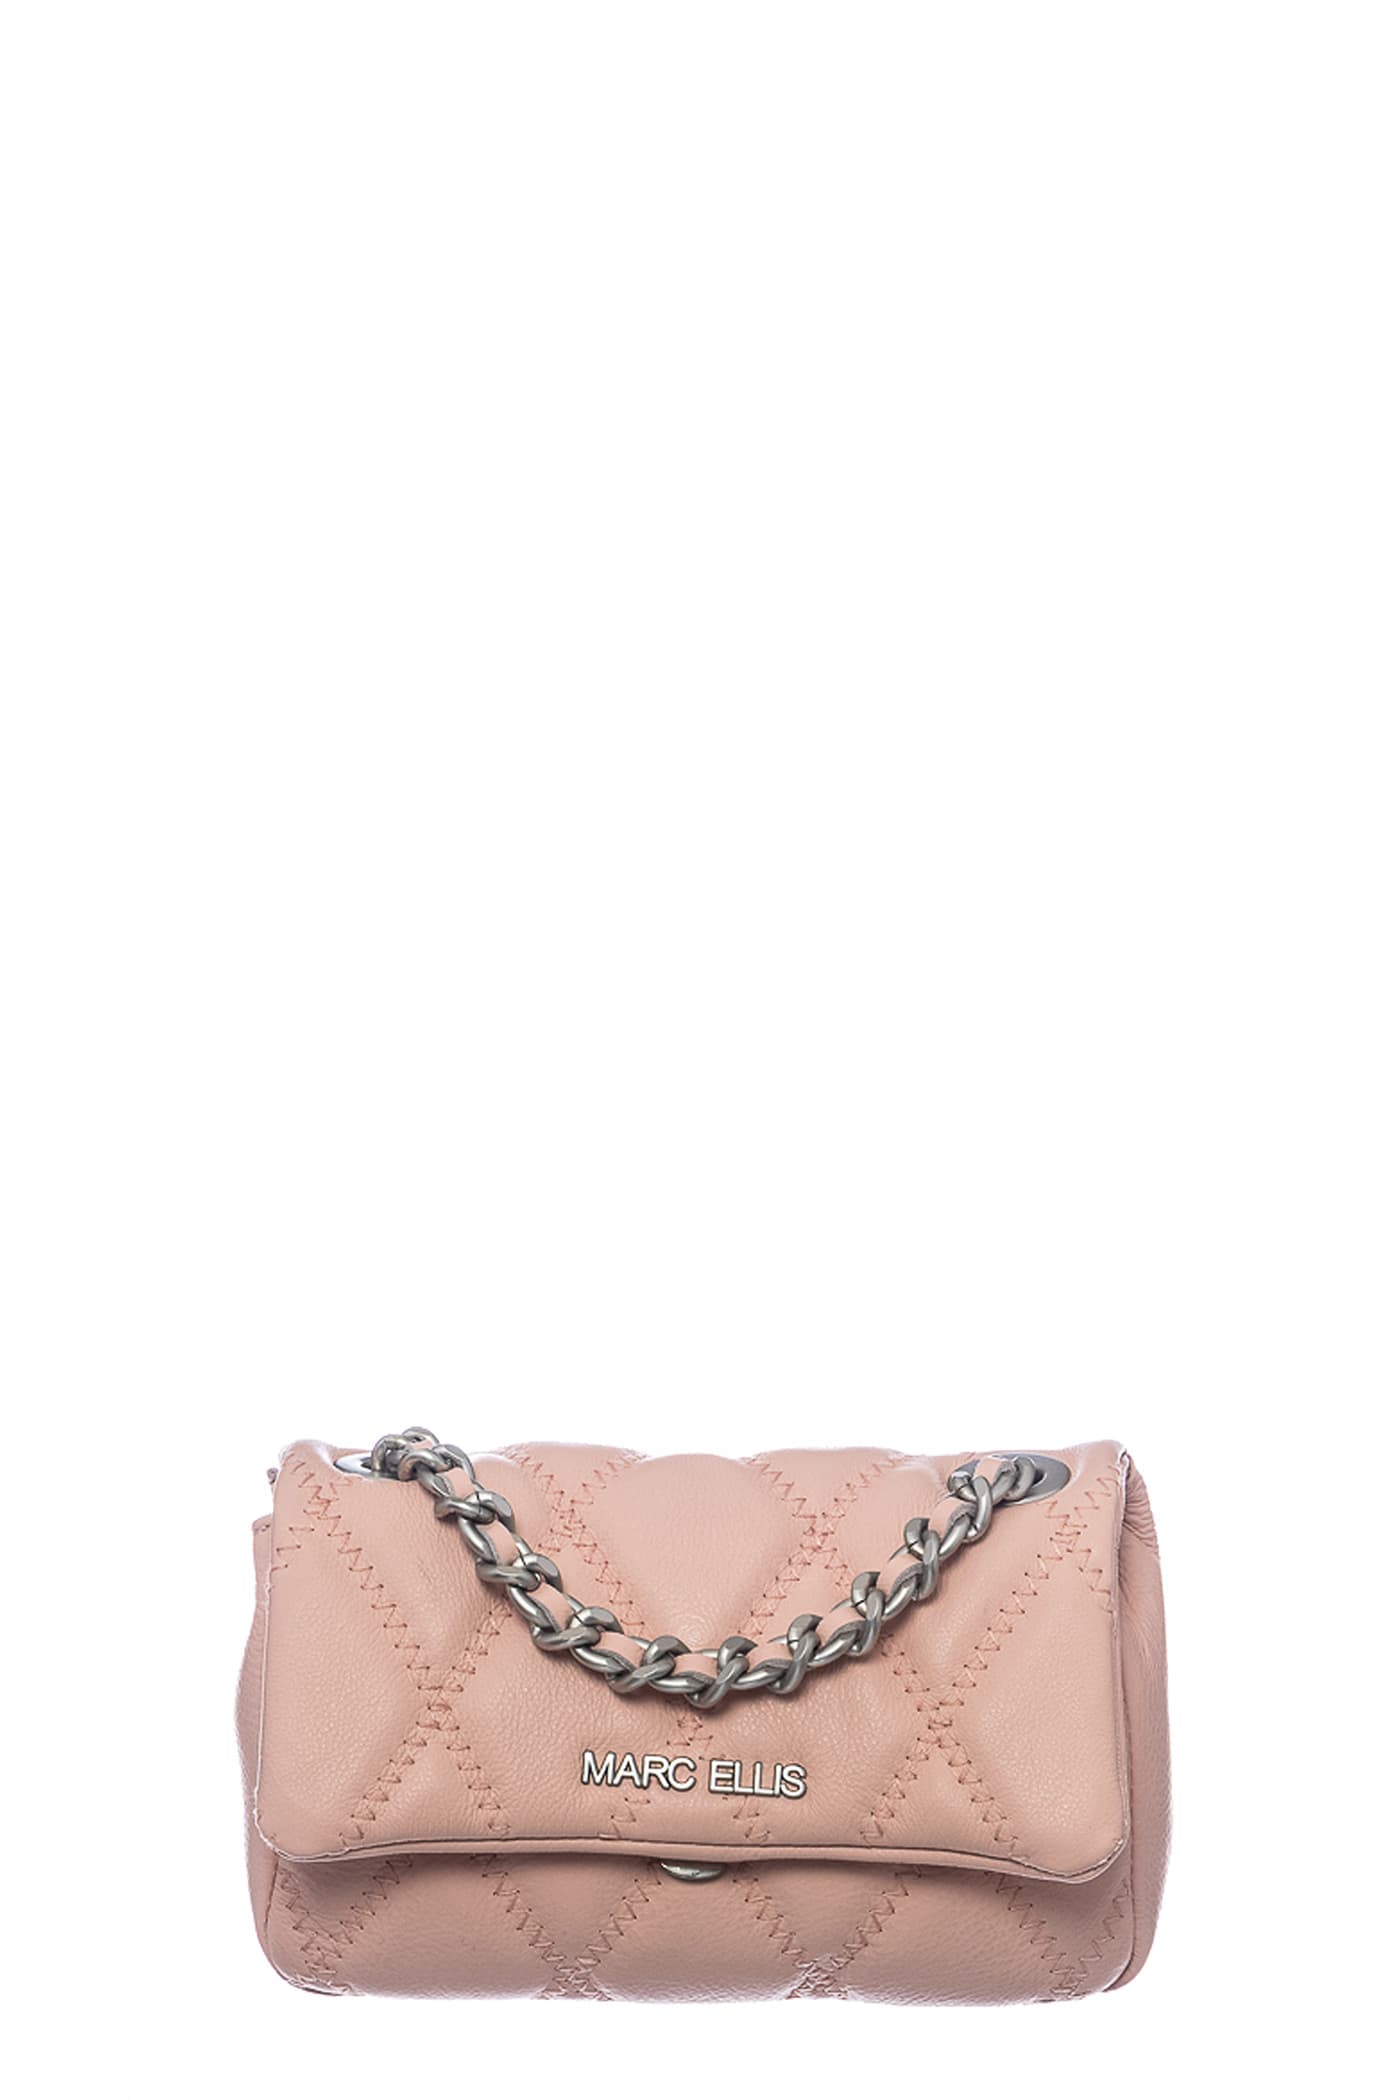 Marc Ellis Desdemona S Shoulder Bag In Rose-pink Leather